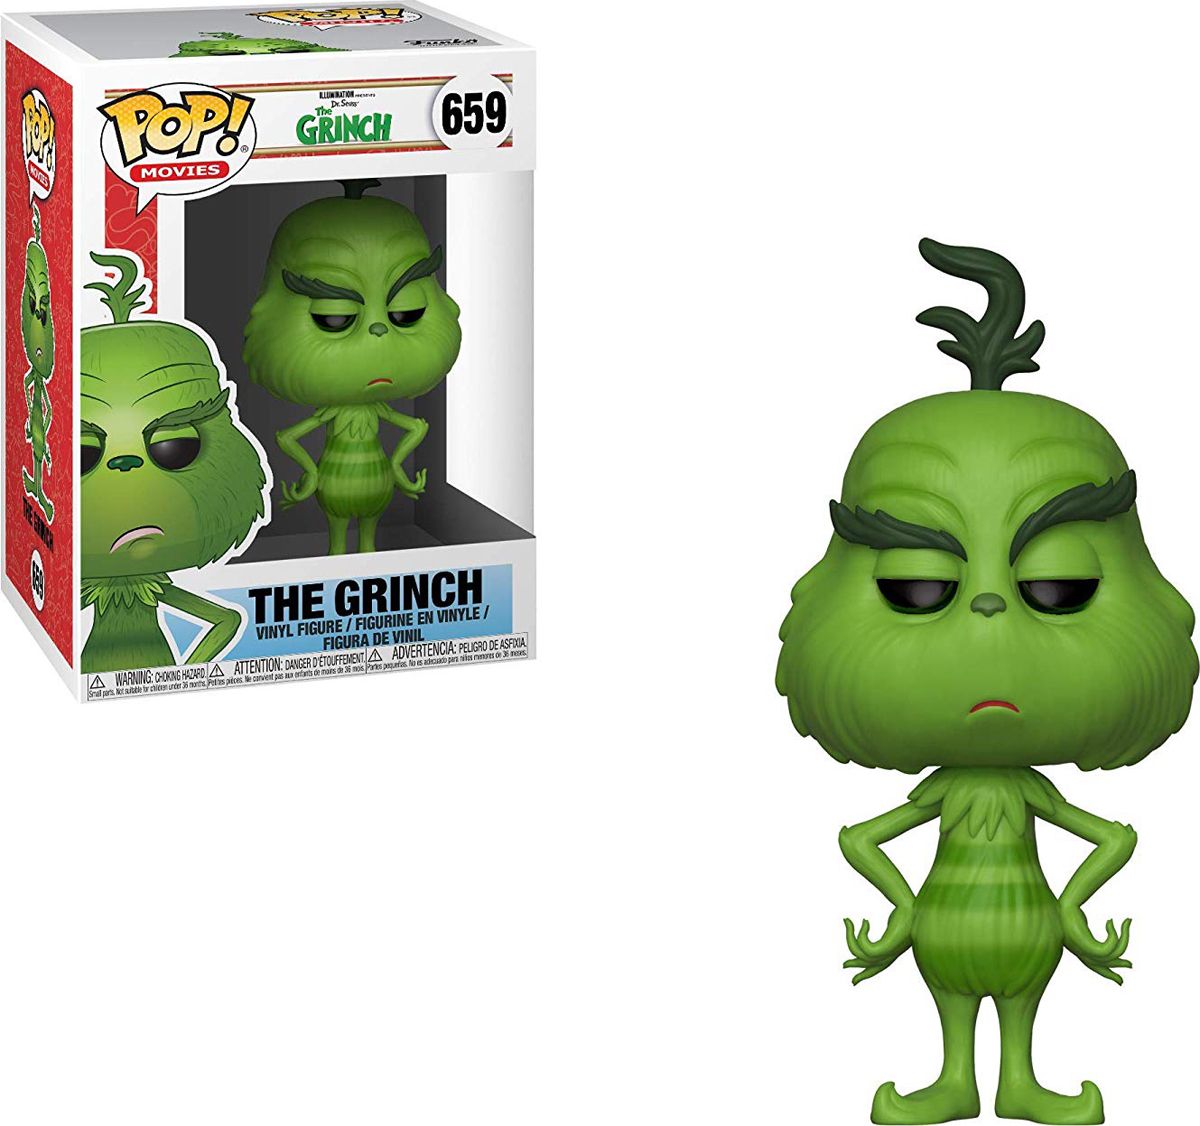  Funko POP! Vinyl: The Grinch Movie: The Grinch 33023